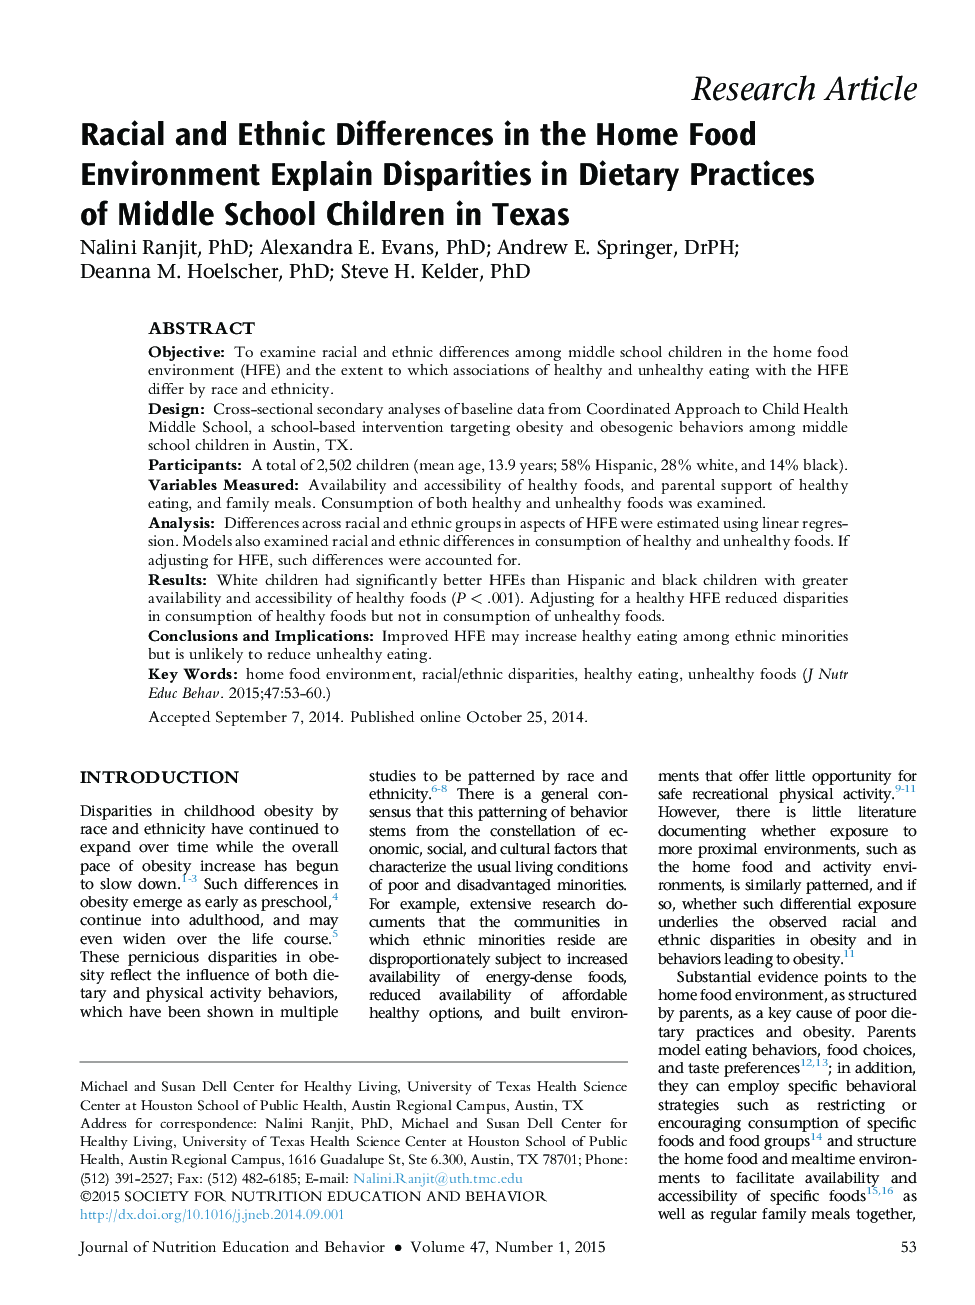 تفاوتهای نژادی و قومی در محیط غذایی خانه توضیح تفاوت در رفتارهای تغذیه ای کودکان دبستانی در تگزاس 